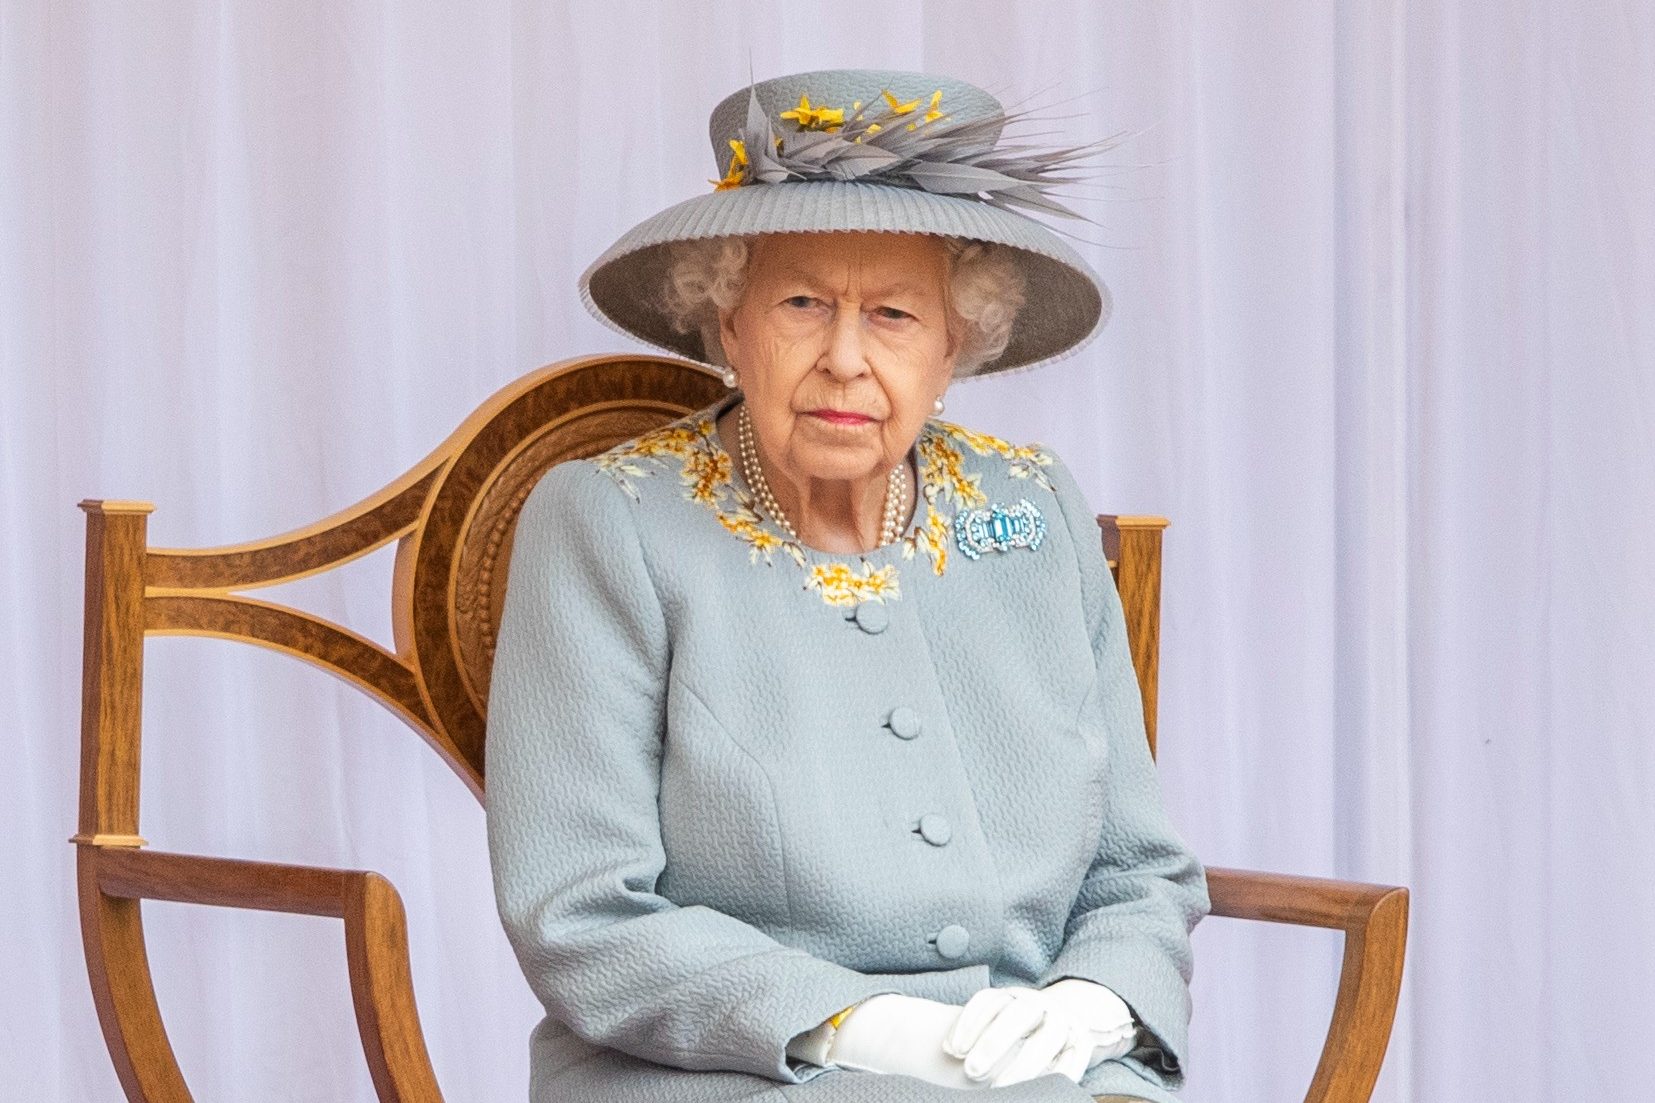 La reina Isabel II, obligada a cambiar sus planes navideños por el coronavirus